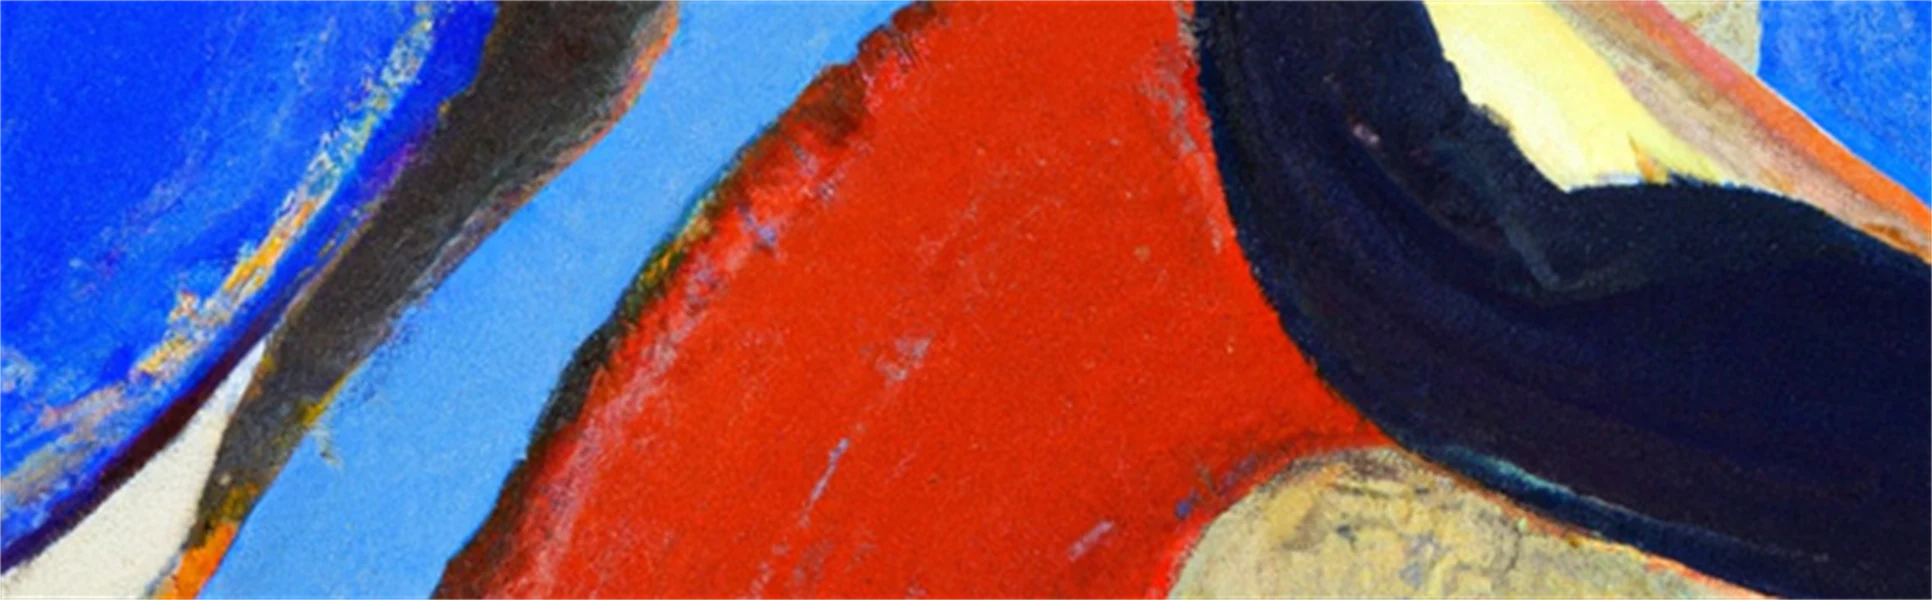 En abstrakt oljemålning i svart, blått och rött